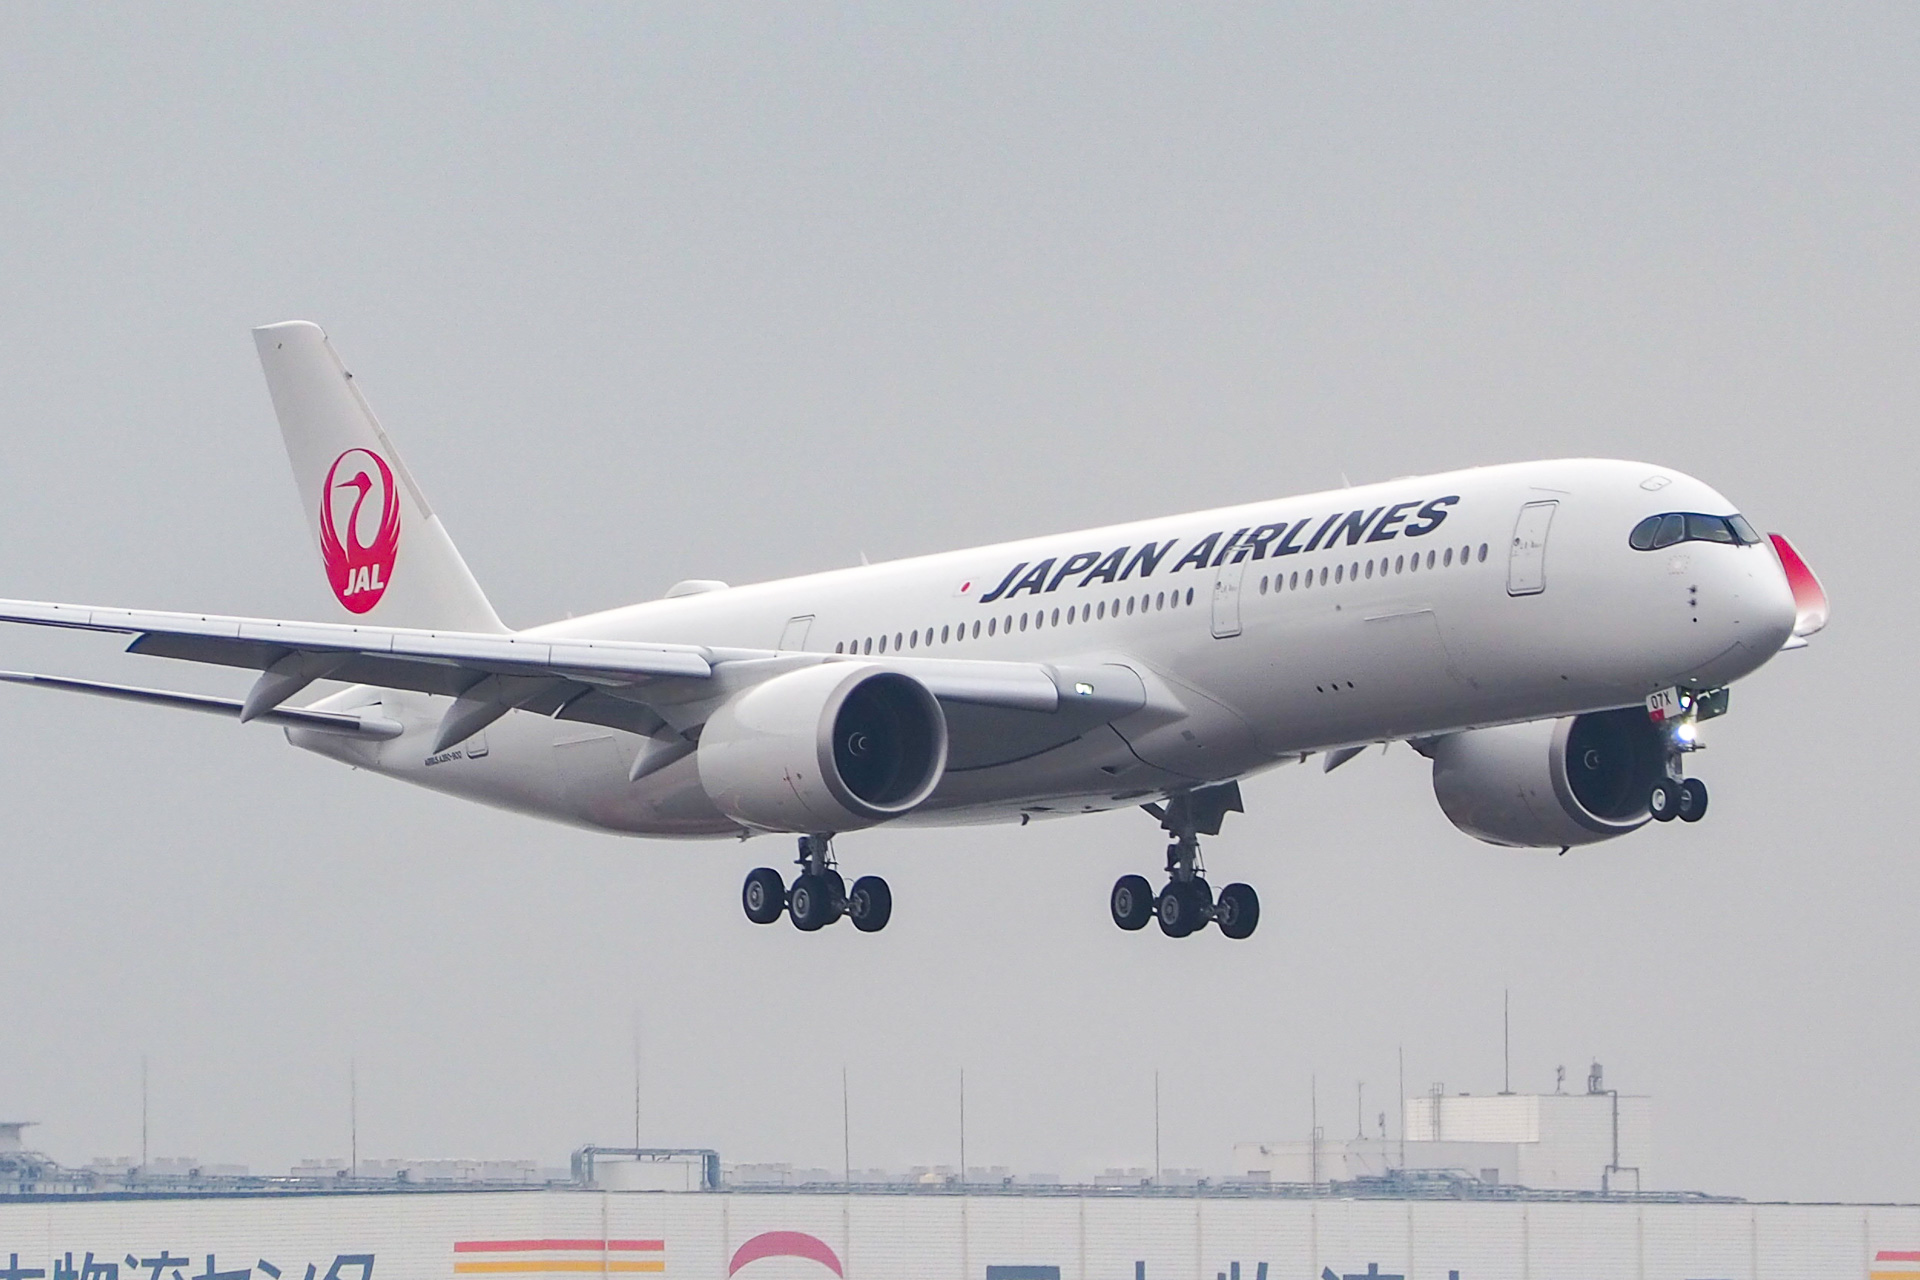 Jal エアバス A350の7号機が羽田に到着 ボーイング 777の置き換え進む トラベル Watch